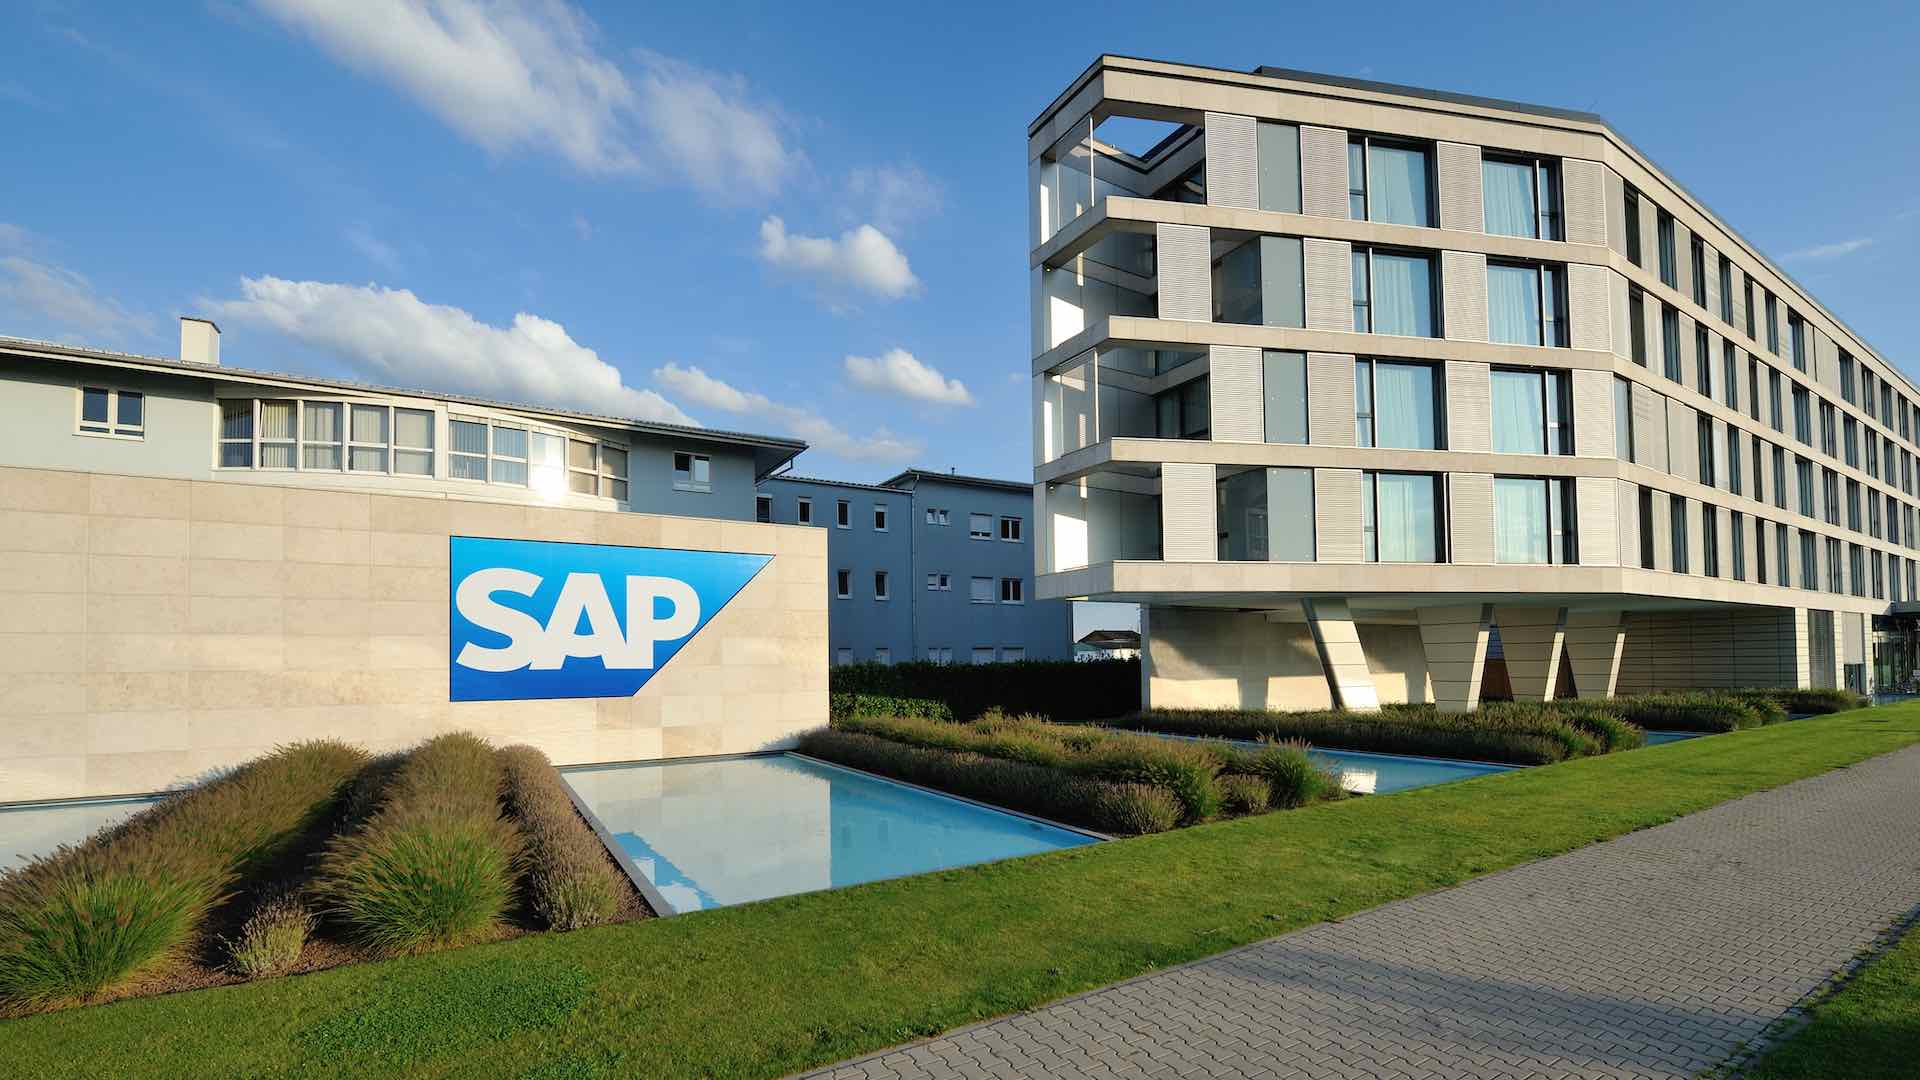 SAP's massive €2 billion investment in AI transformation